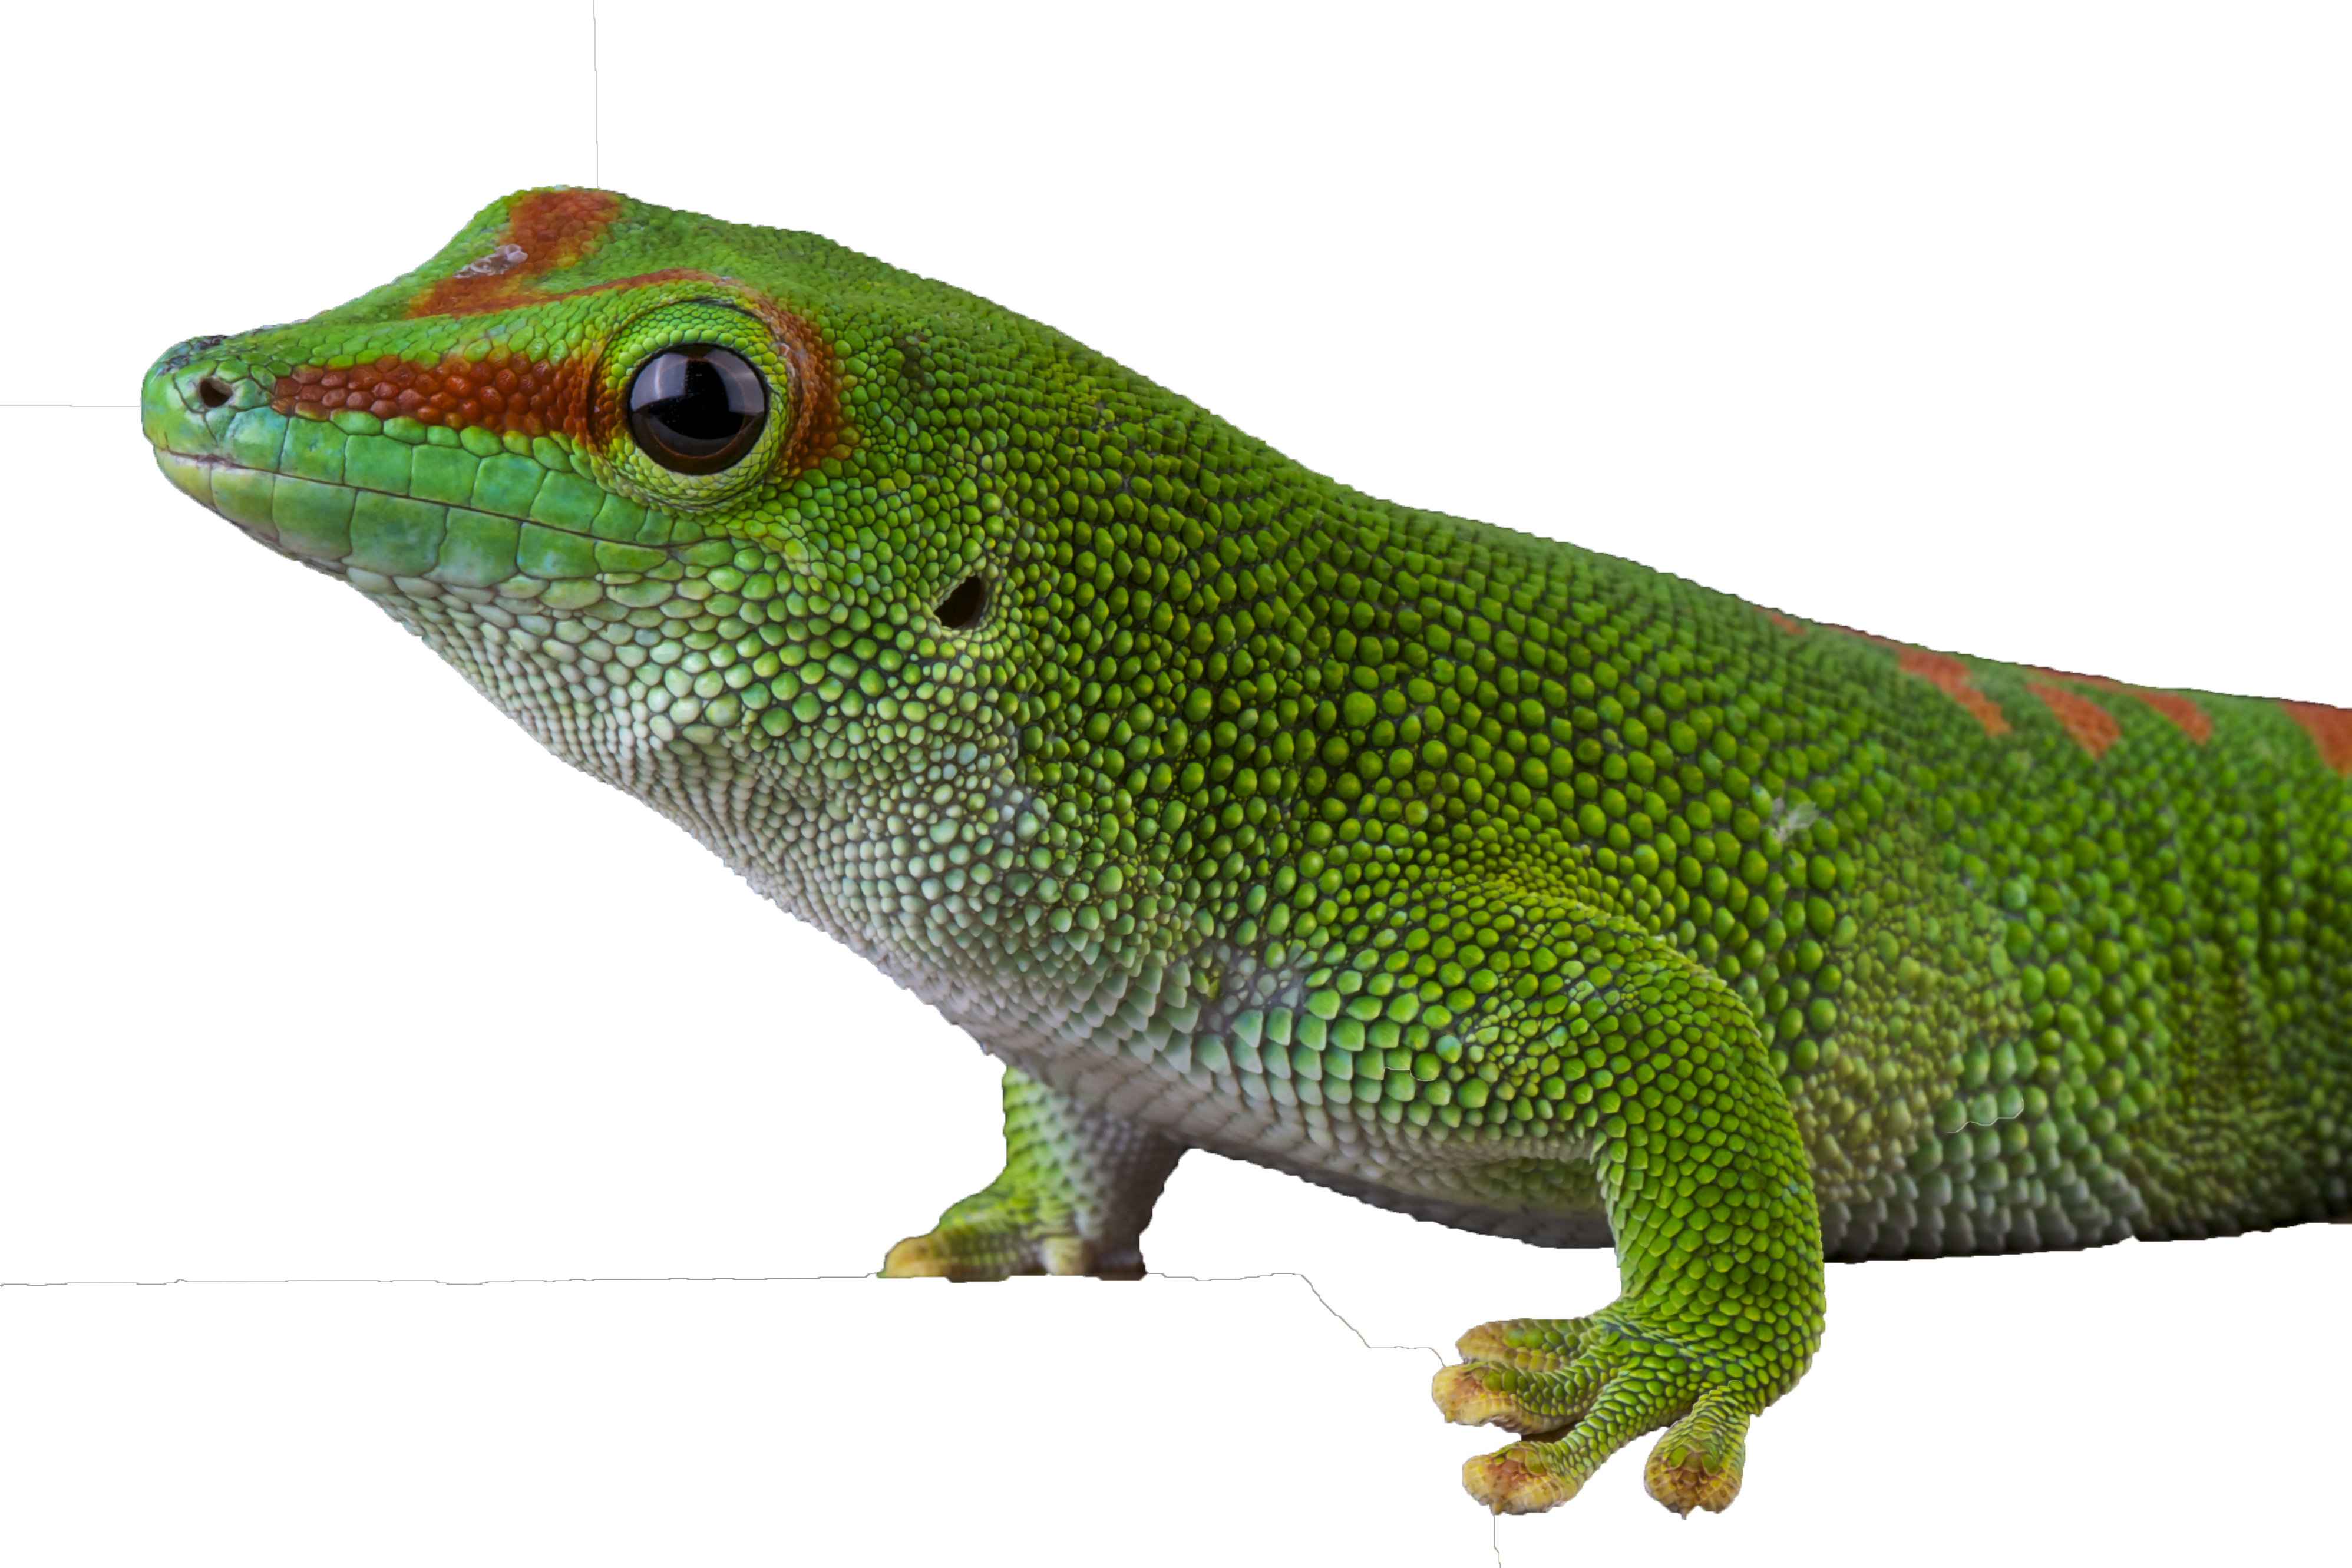 Madagascar daggecko